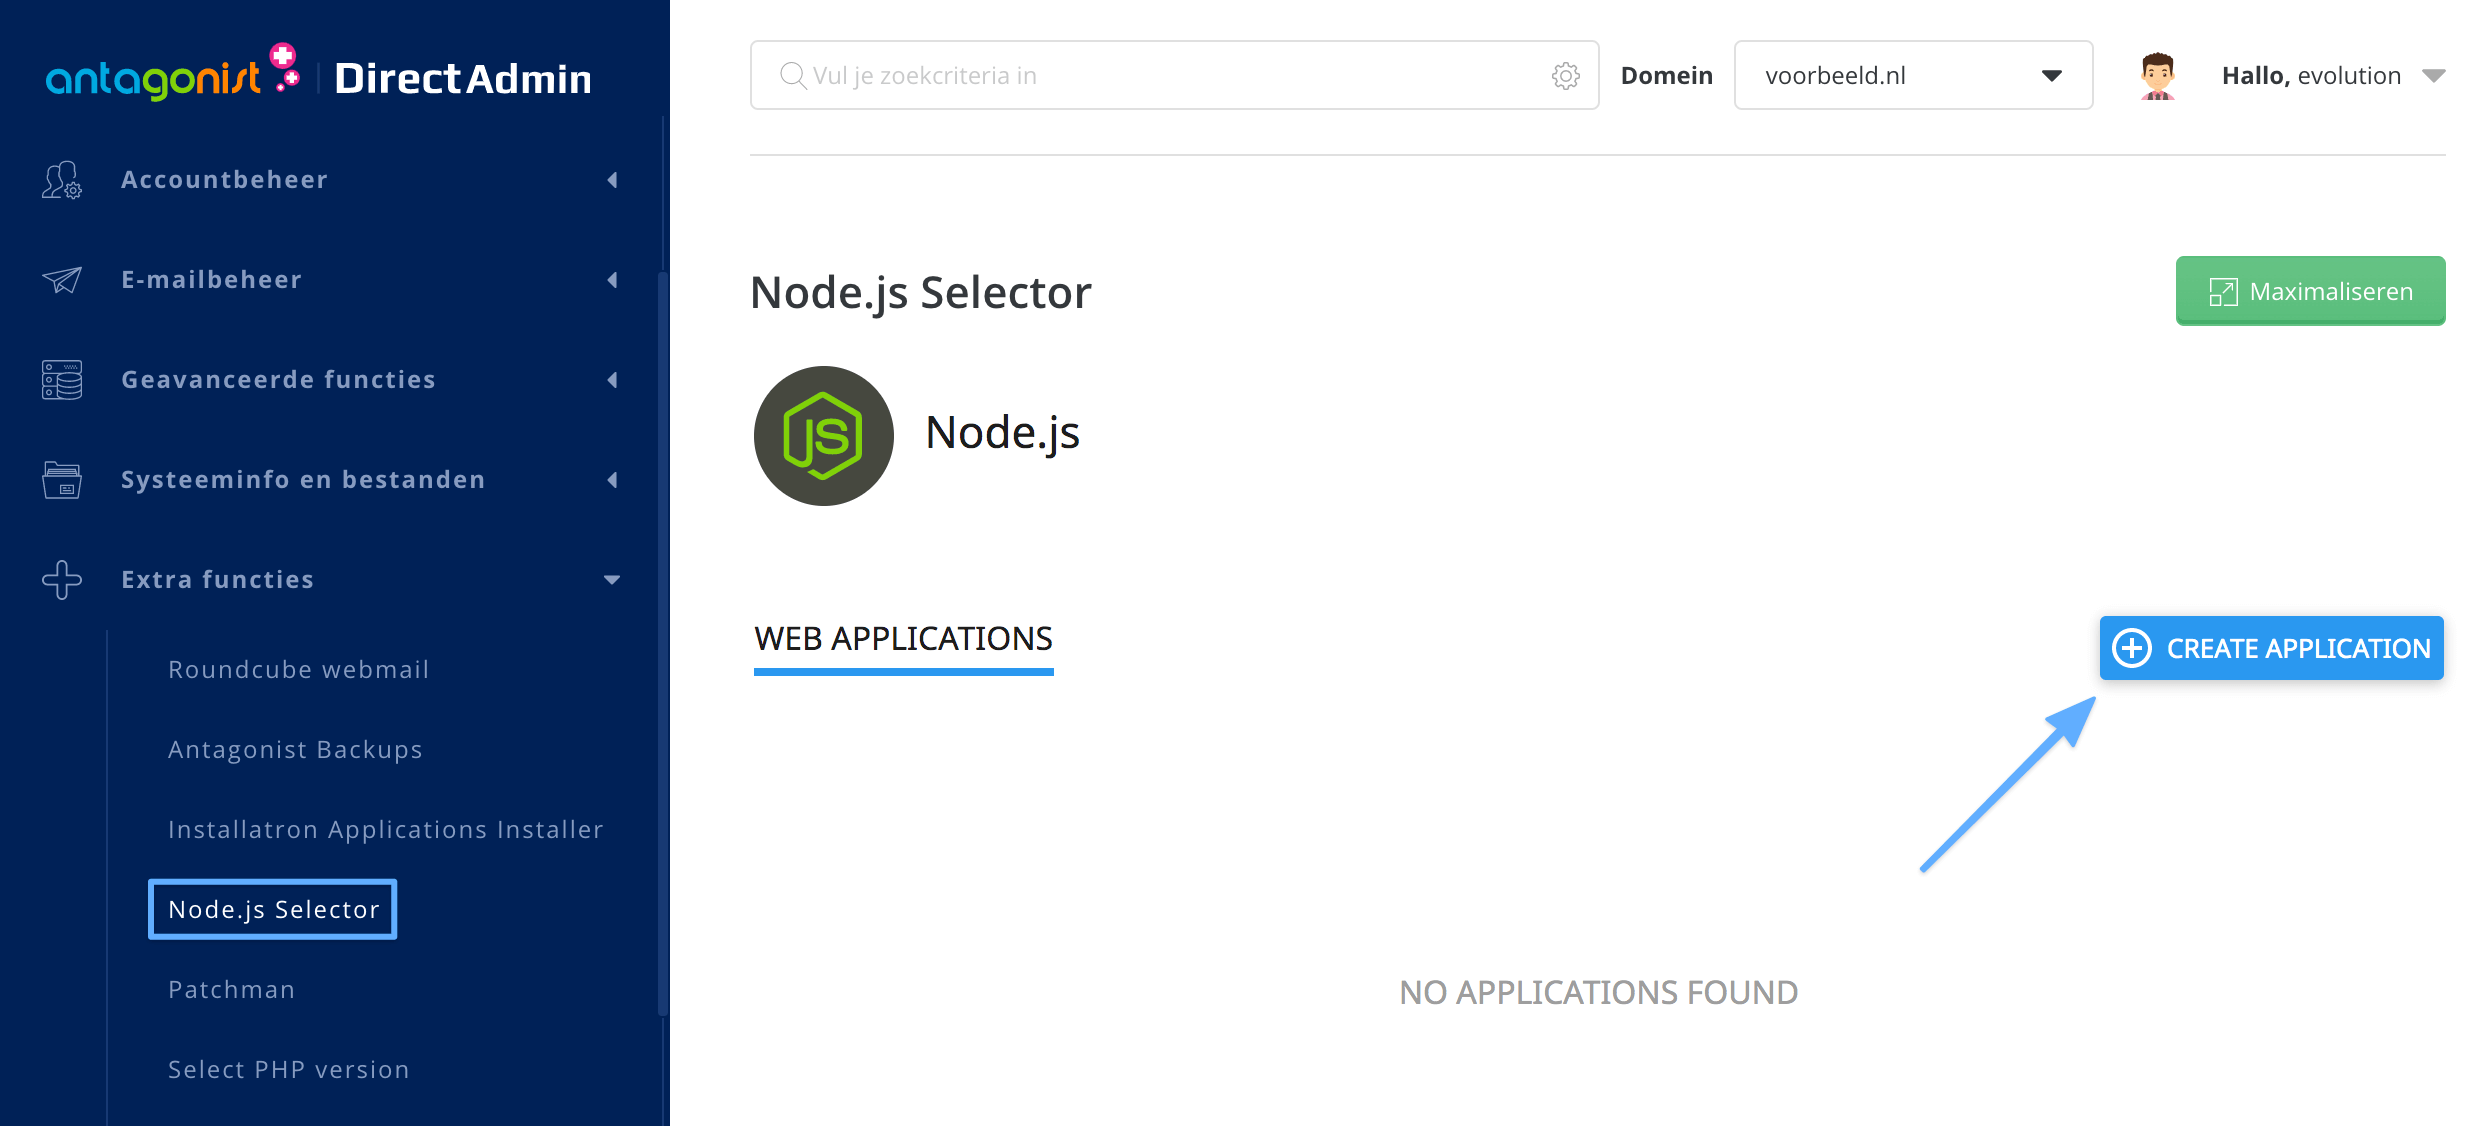 De Node.js-selector in DirectAdmin.